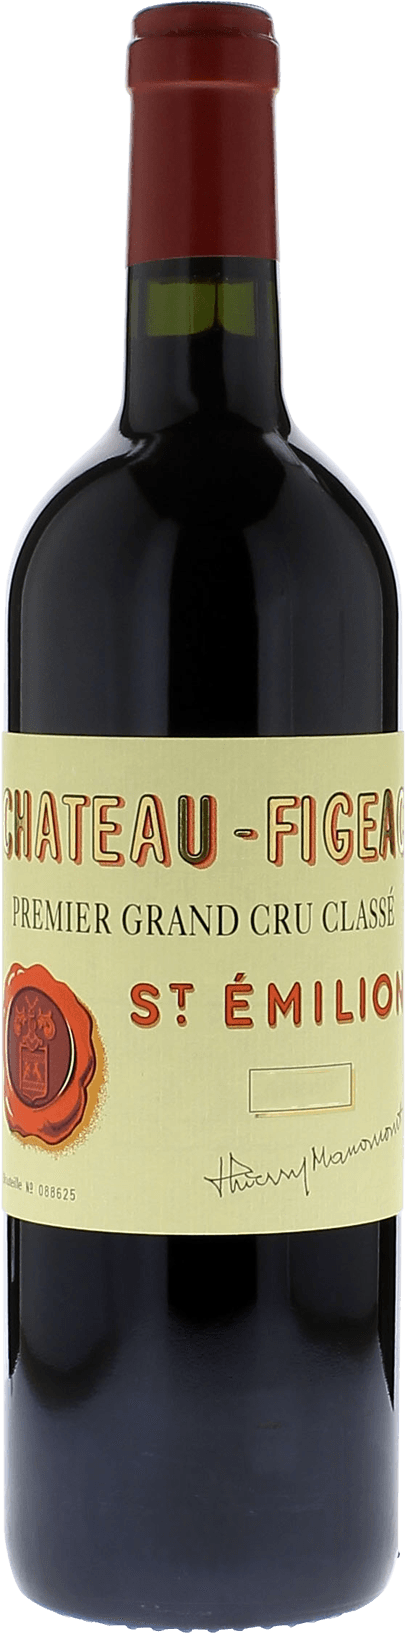 Figeac 1995 1er Grand cru class Saint-Emilion, Bordeaux rouge